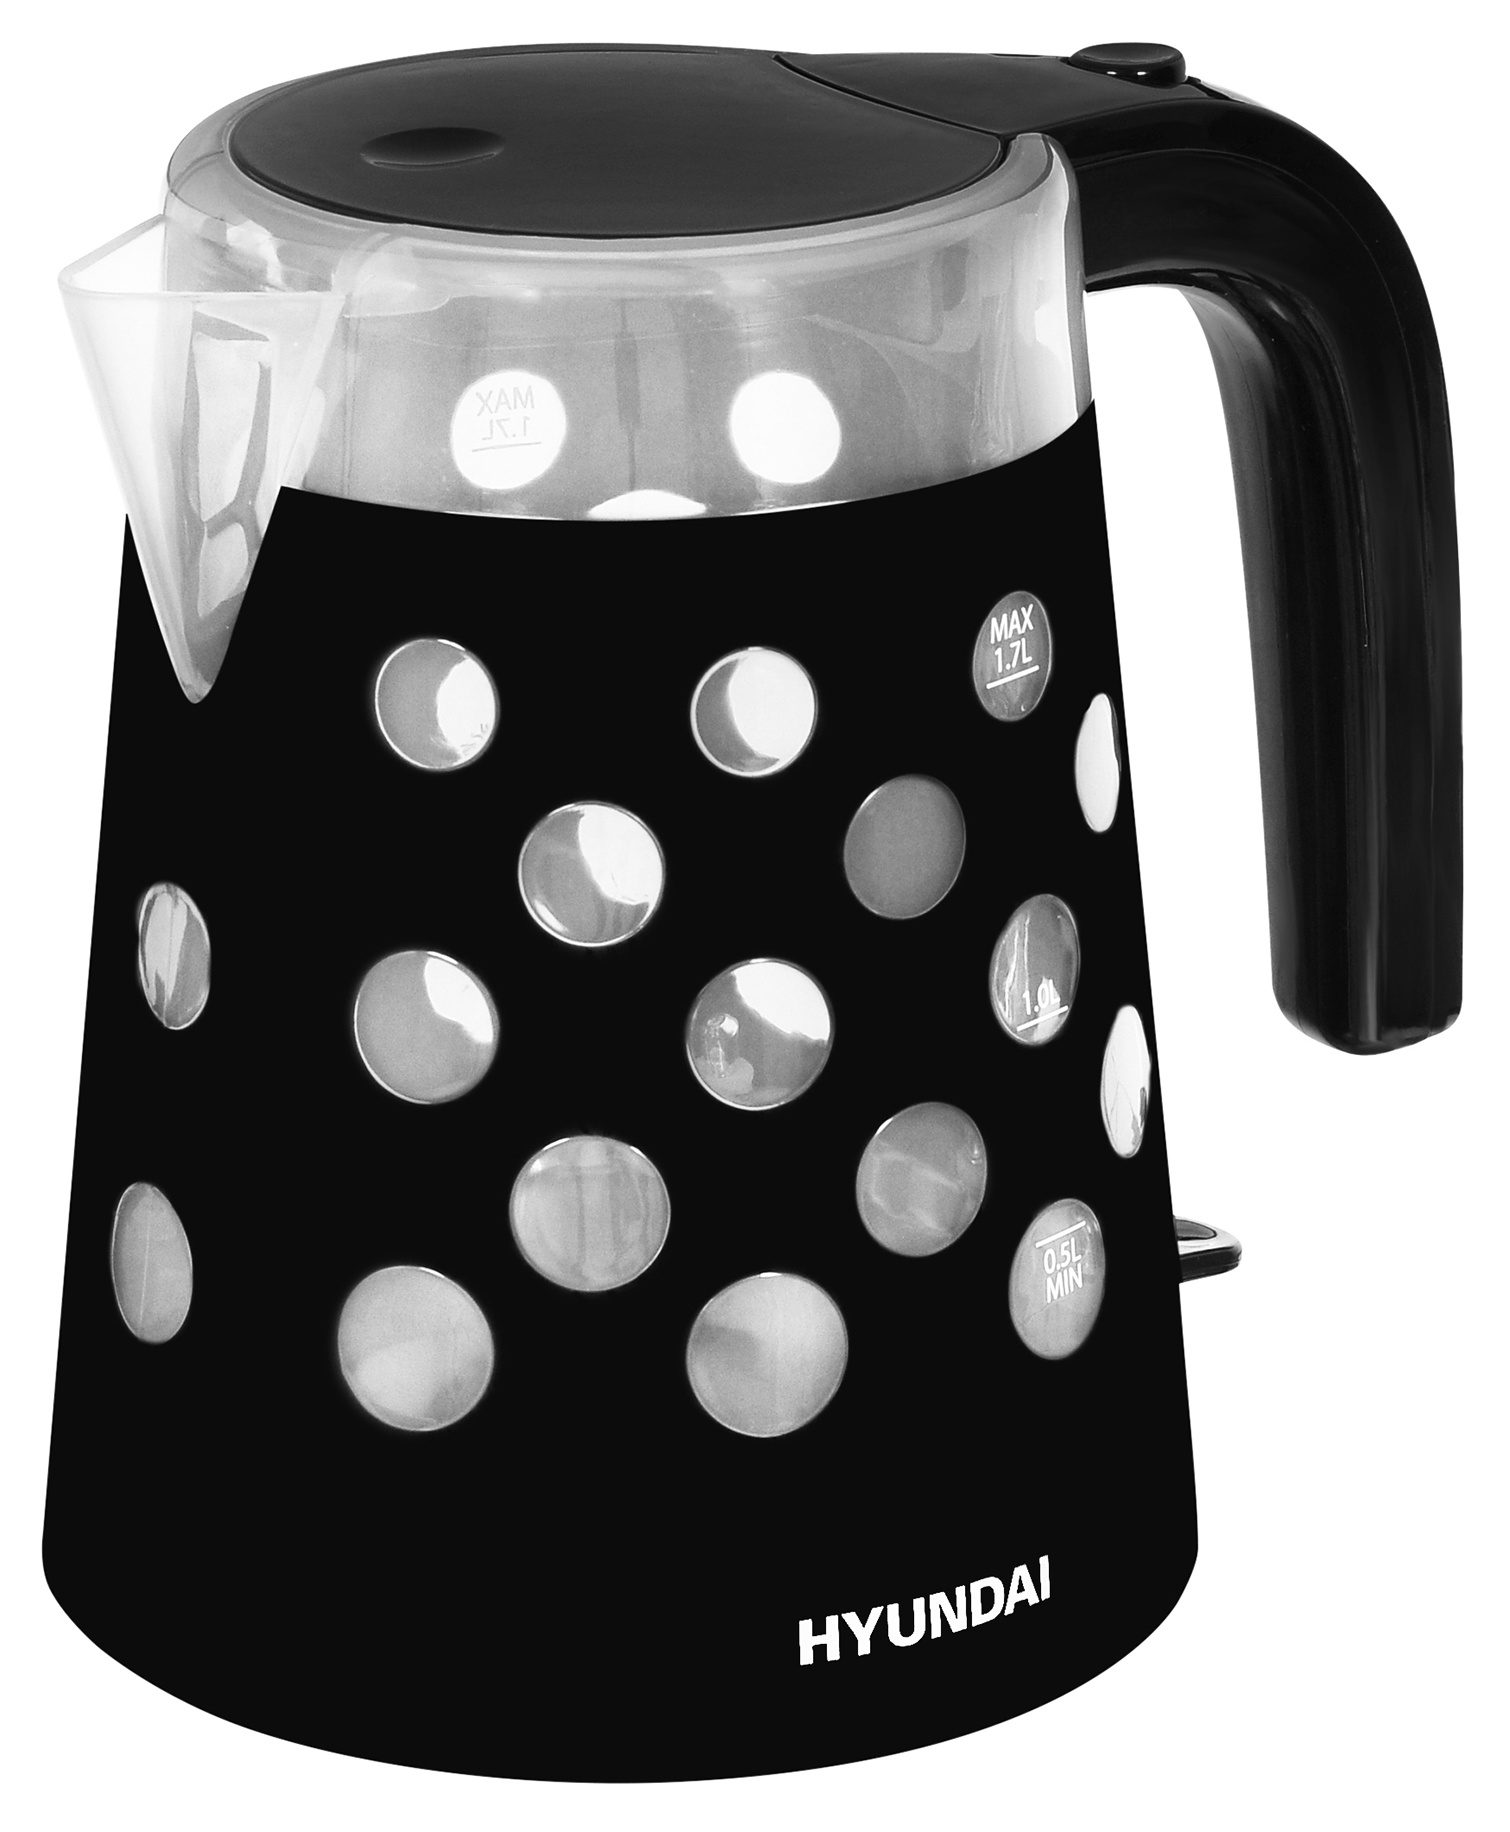 Чайник электрический HYUNDAI HYK-G2012 1.7 л прозрачный, черный чайник электрический hyundai hyk g2012 1 7л 2200вт черный прозрачный